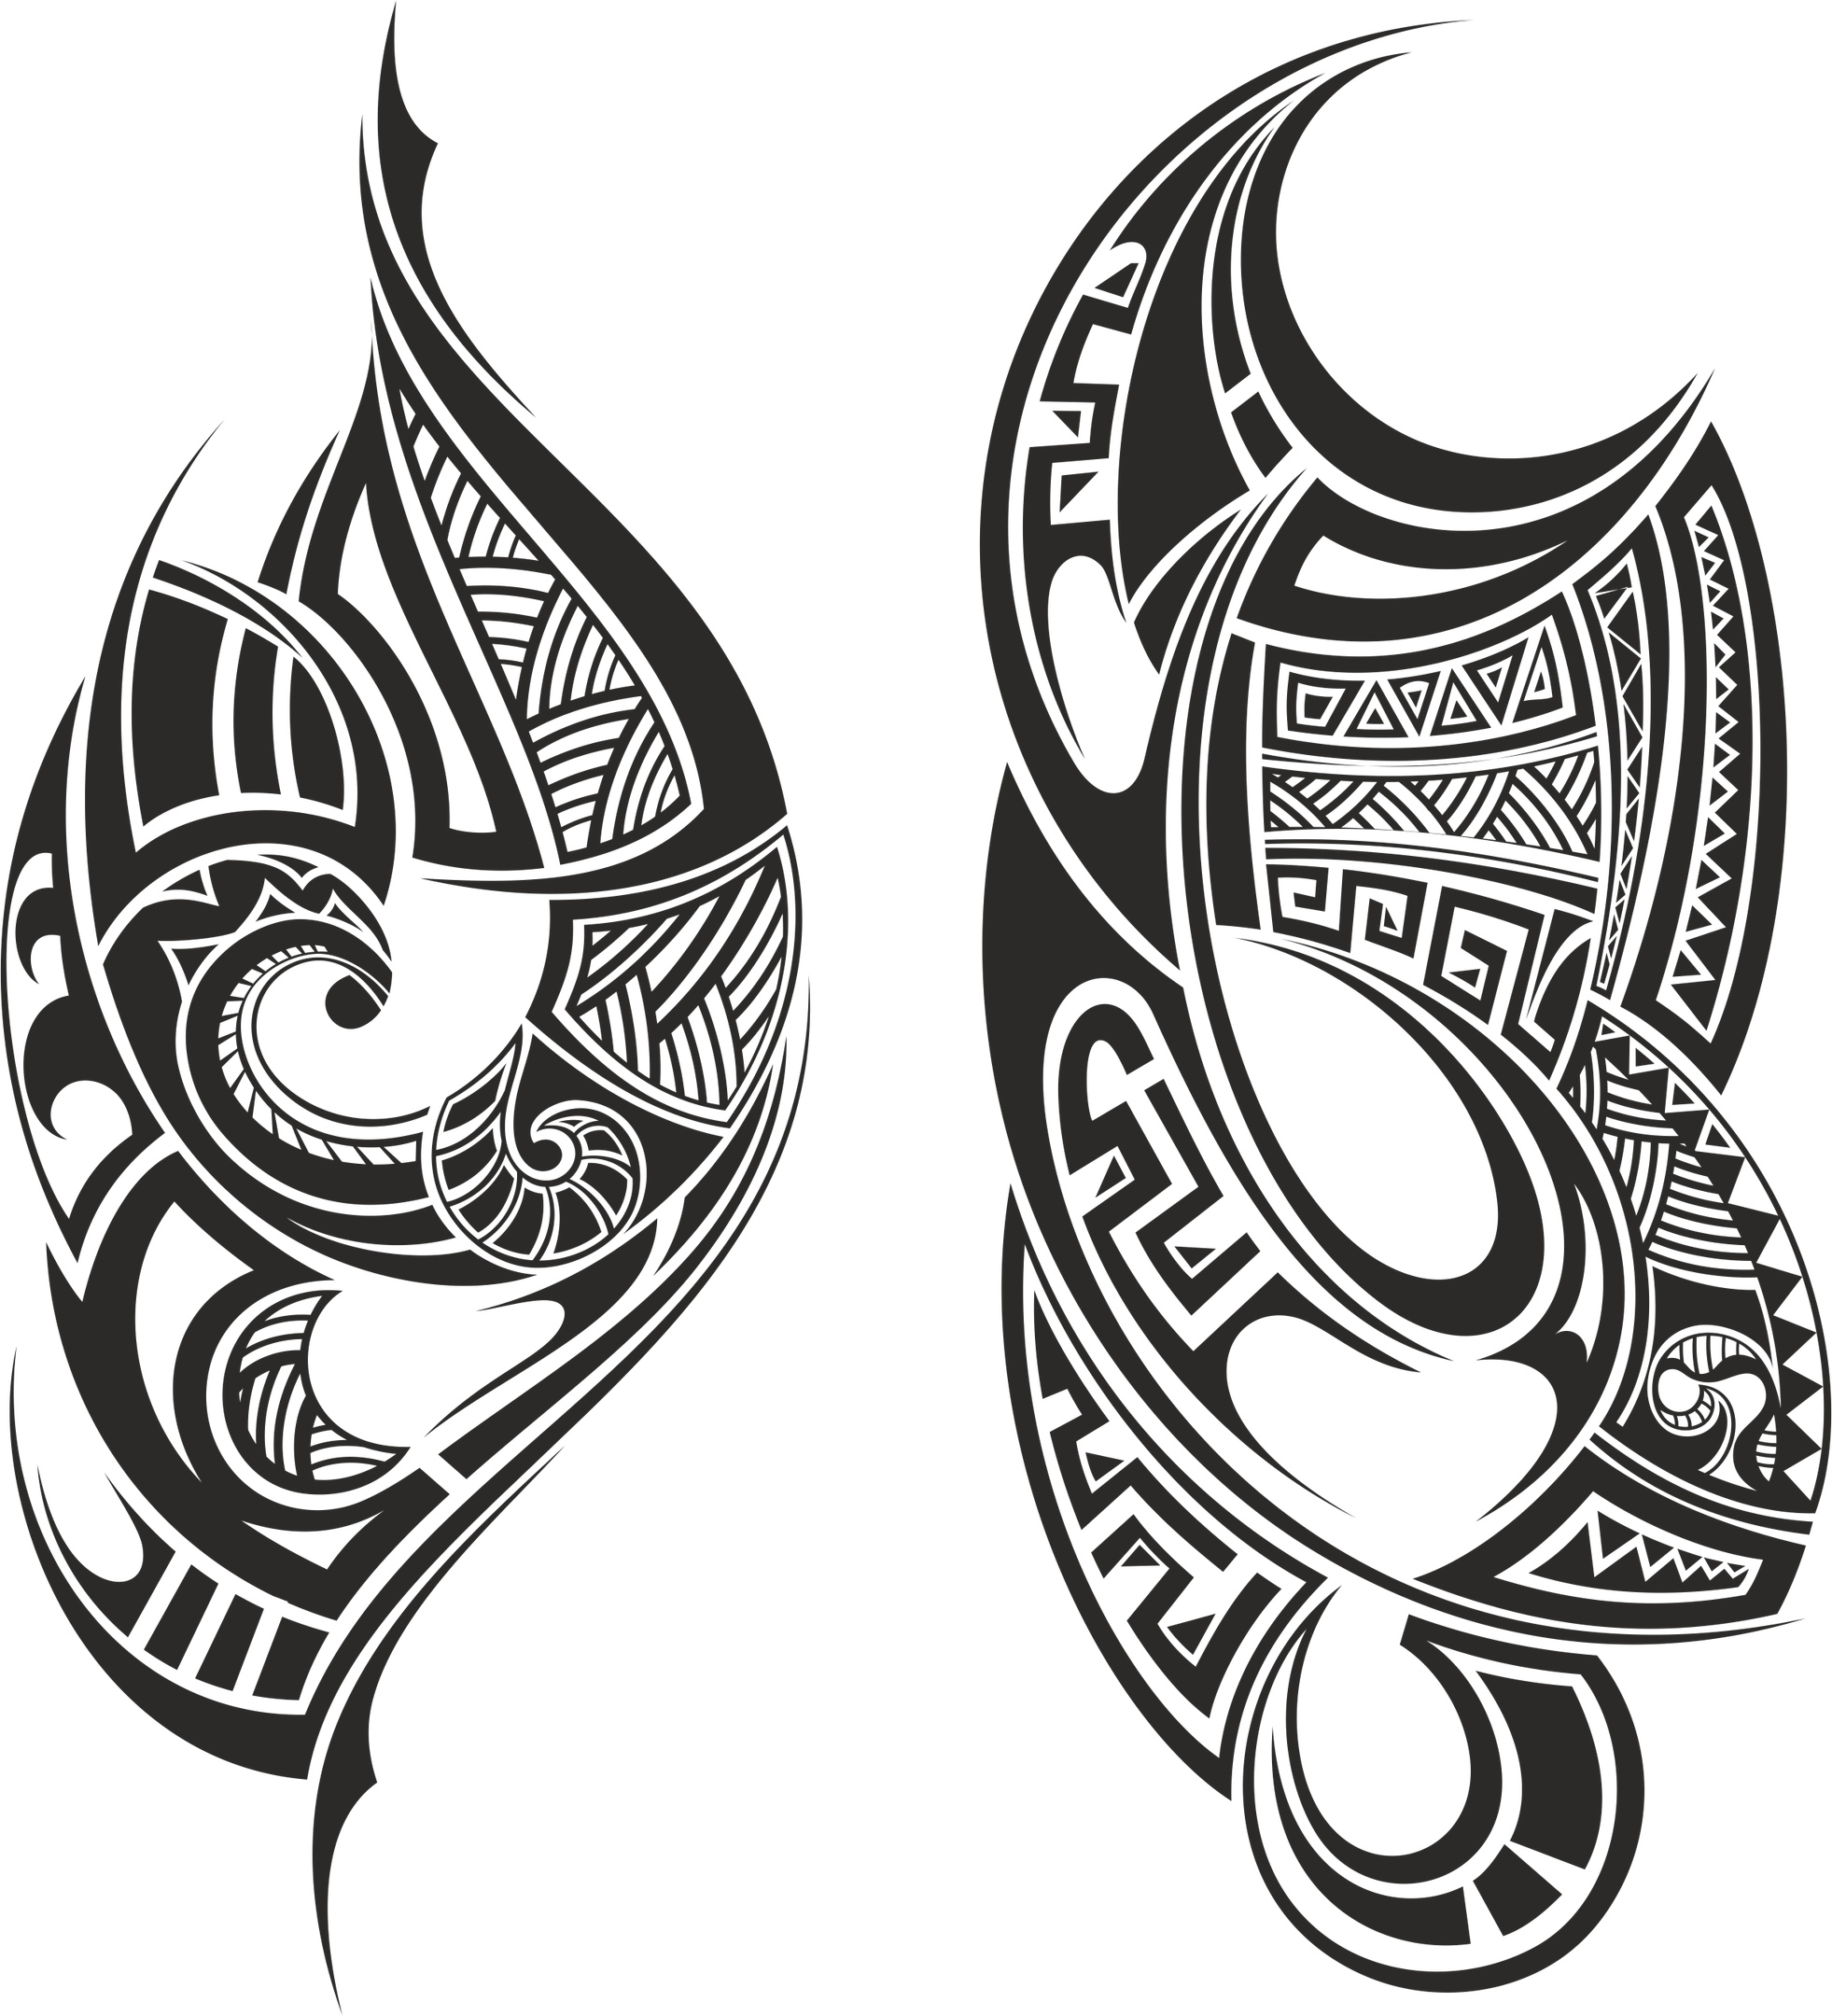 Tatuagem tribal